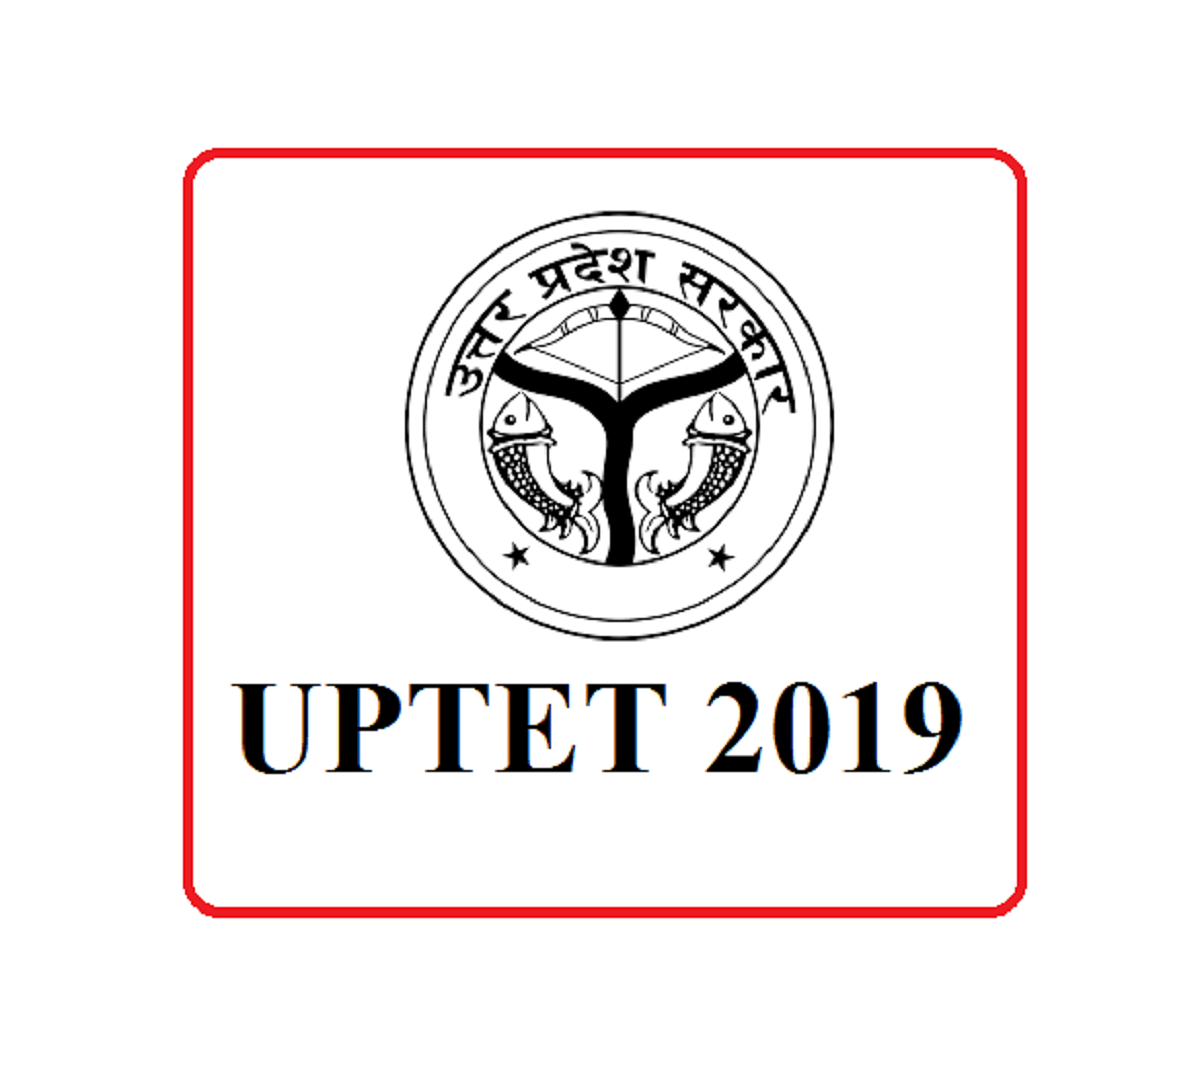 UPTET 2019 Live Updates: Result Declared, Check Direct Link Here